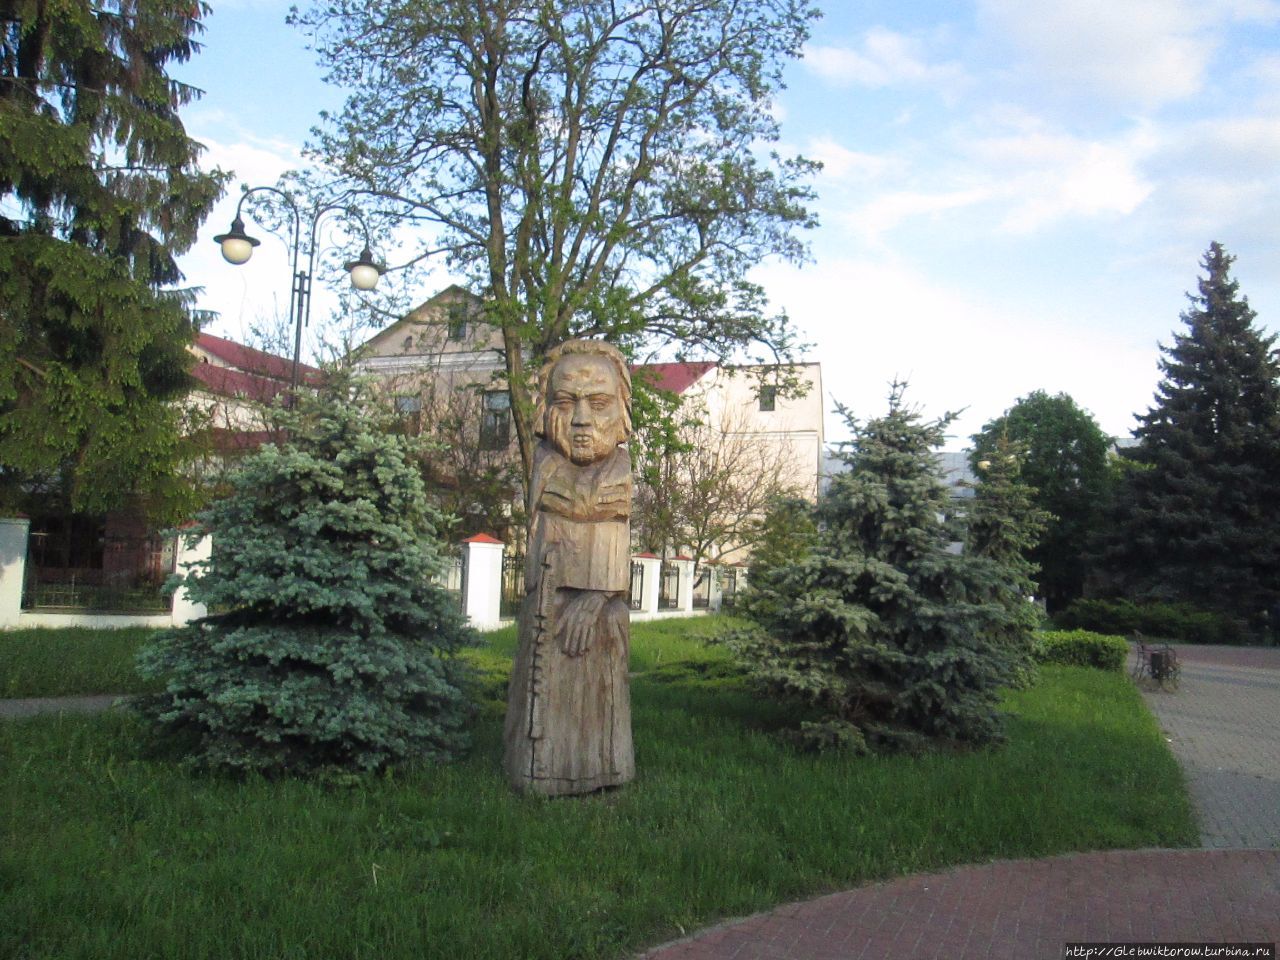 Прогулка по историческому центру Пинска Пинск, Беларусь